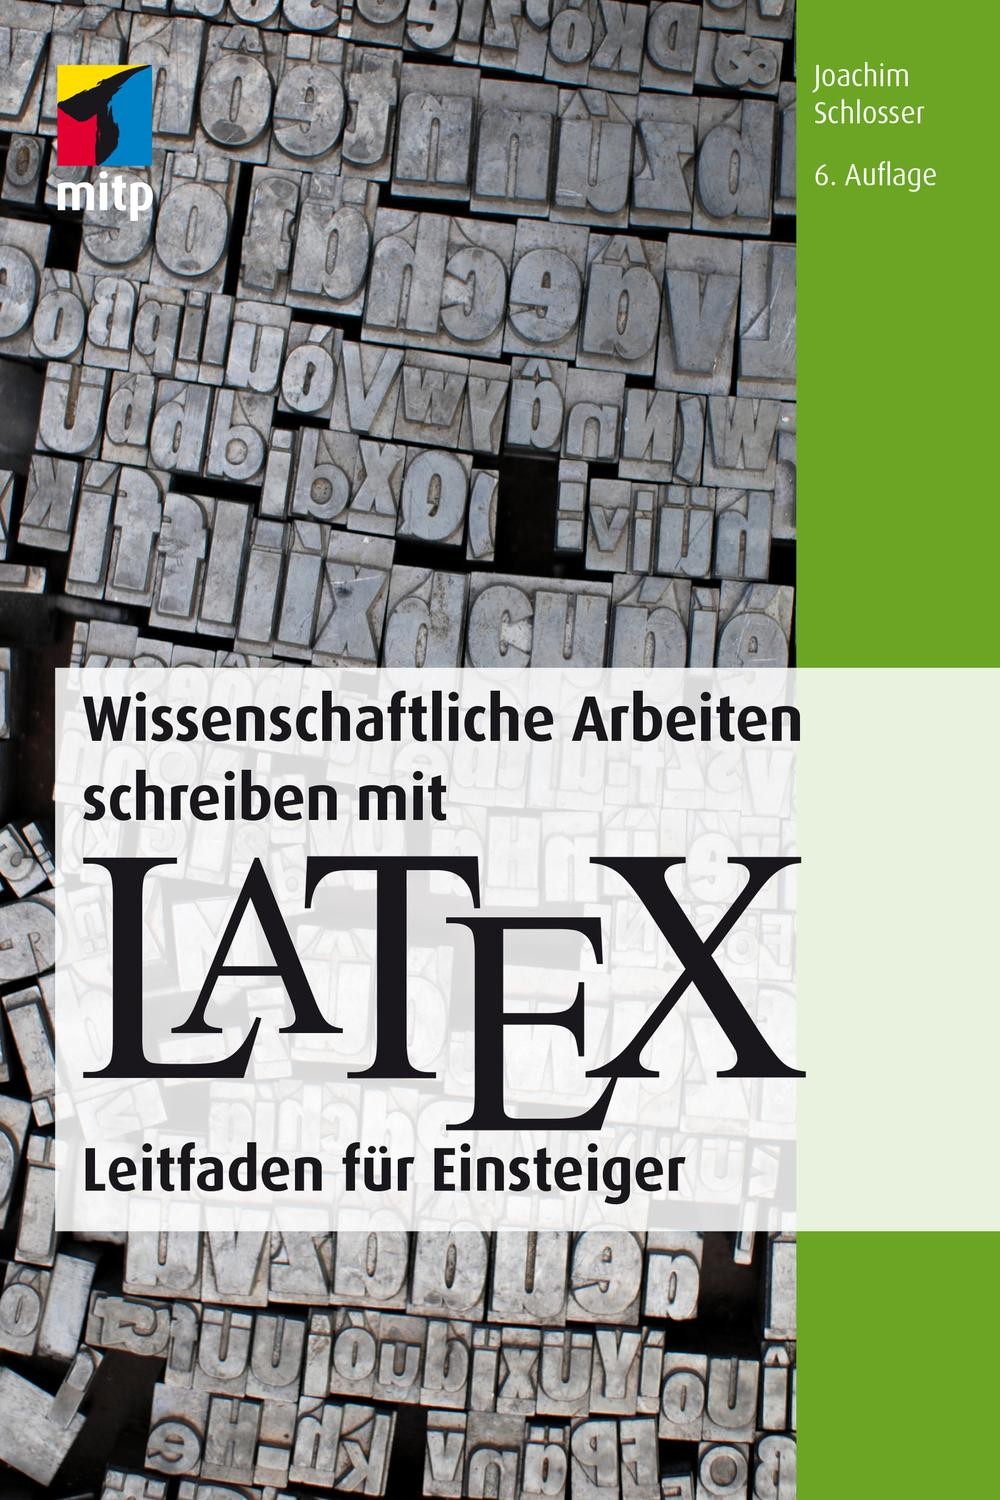 Wissenschaftliche Arbeiten Schreiben Mit LaTeX: Leitfaden Für Einsteiger, 6. Auflage